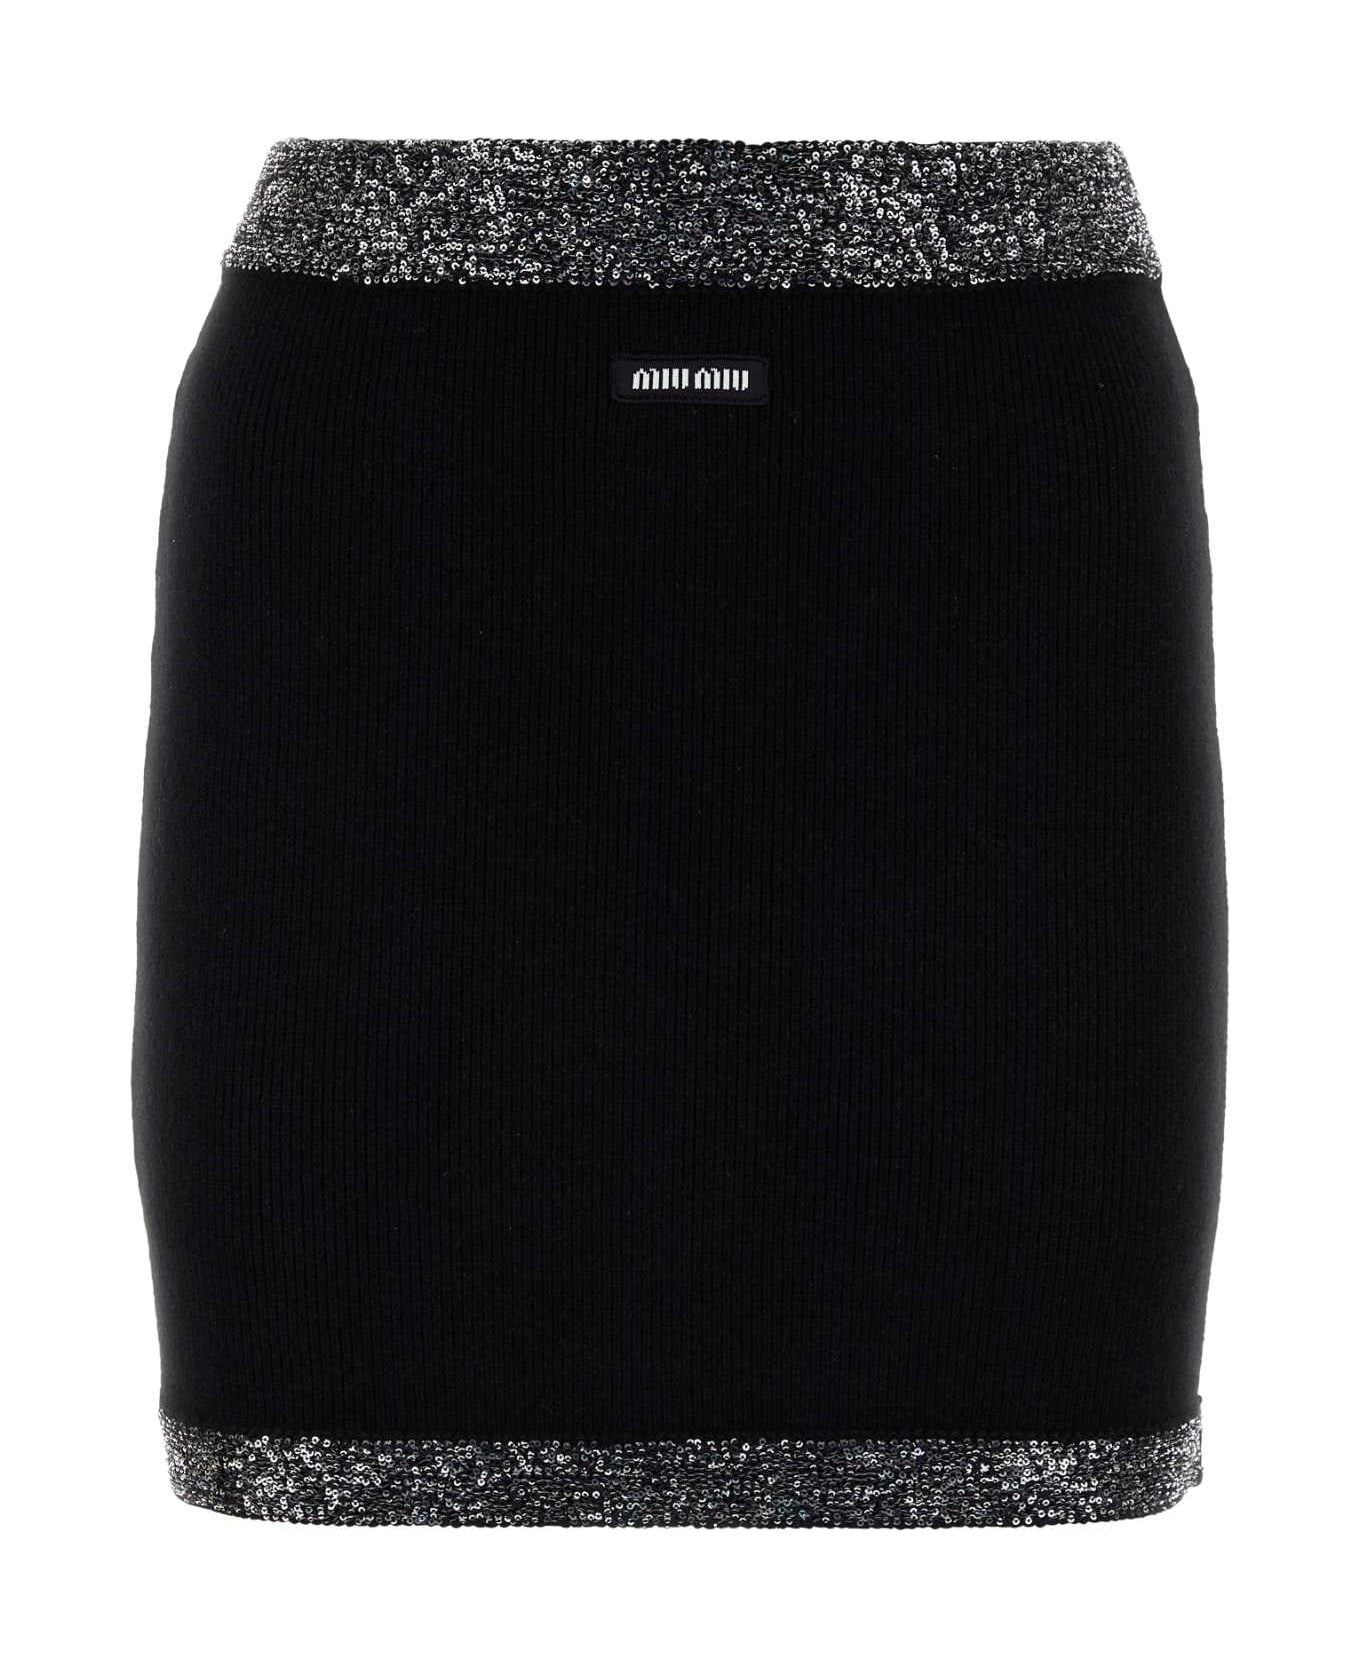 Miu Miu Black Stretch Cashmere Blend Mini Skirt - NERONERO スカート